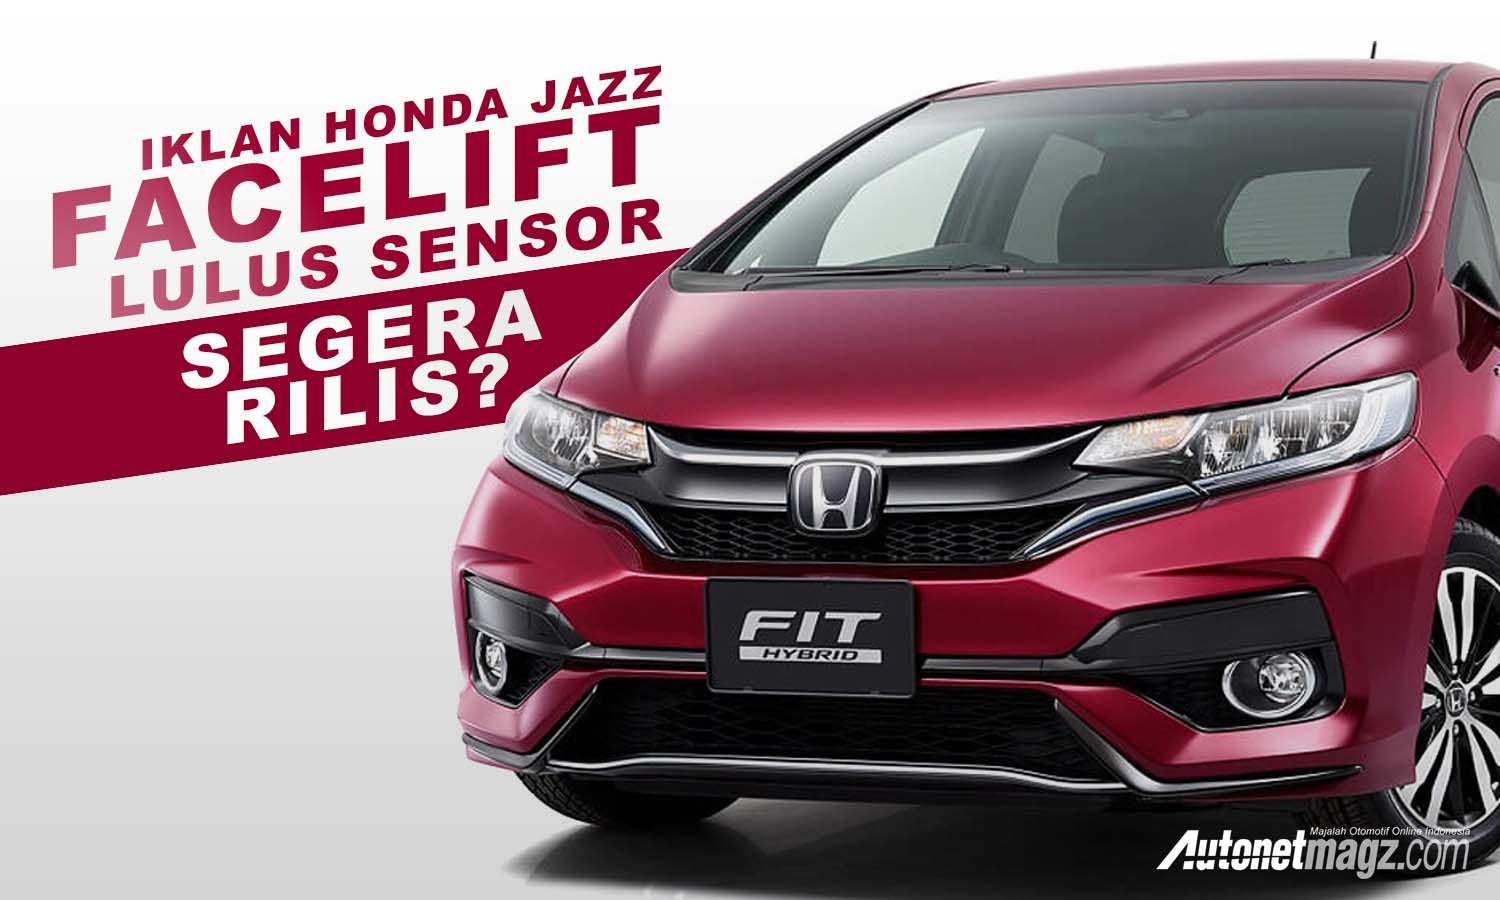 Berita, cover jazz: Iklan Honda Jazz Facelift Lulus Sensor, Segera Rilis??